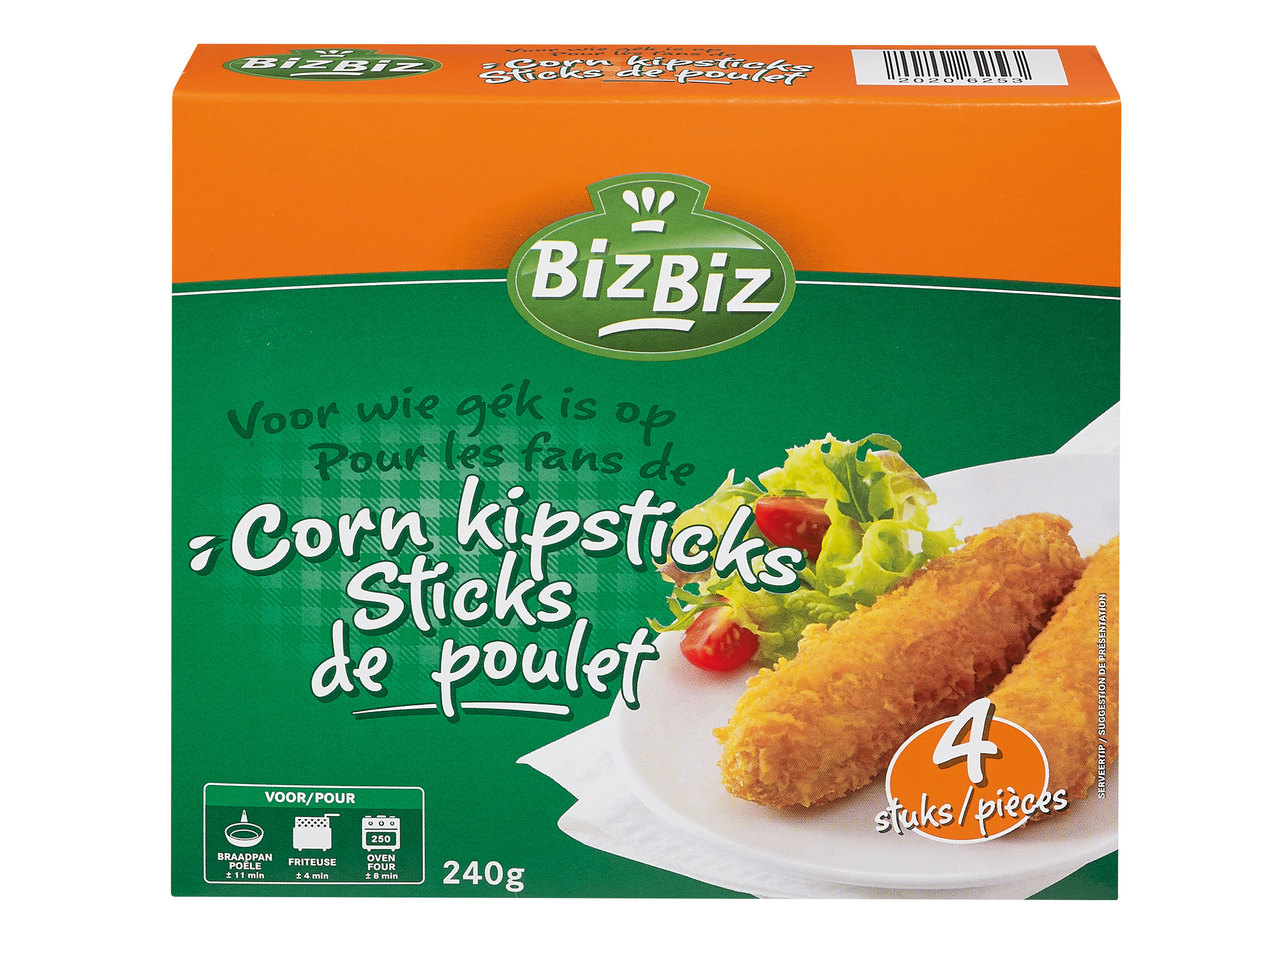 Corn kipsticks